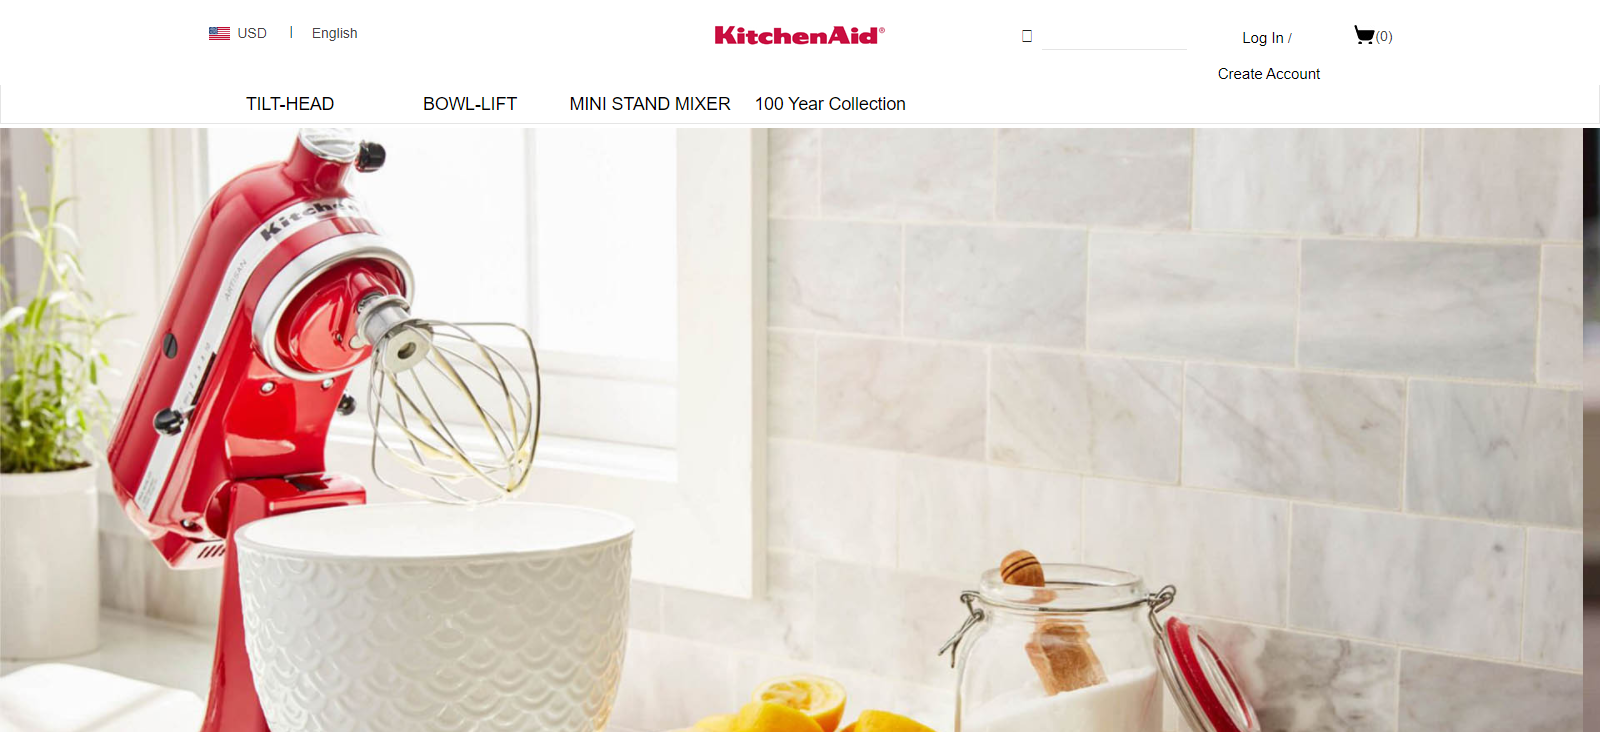 Kitchenaid Homepage Image